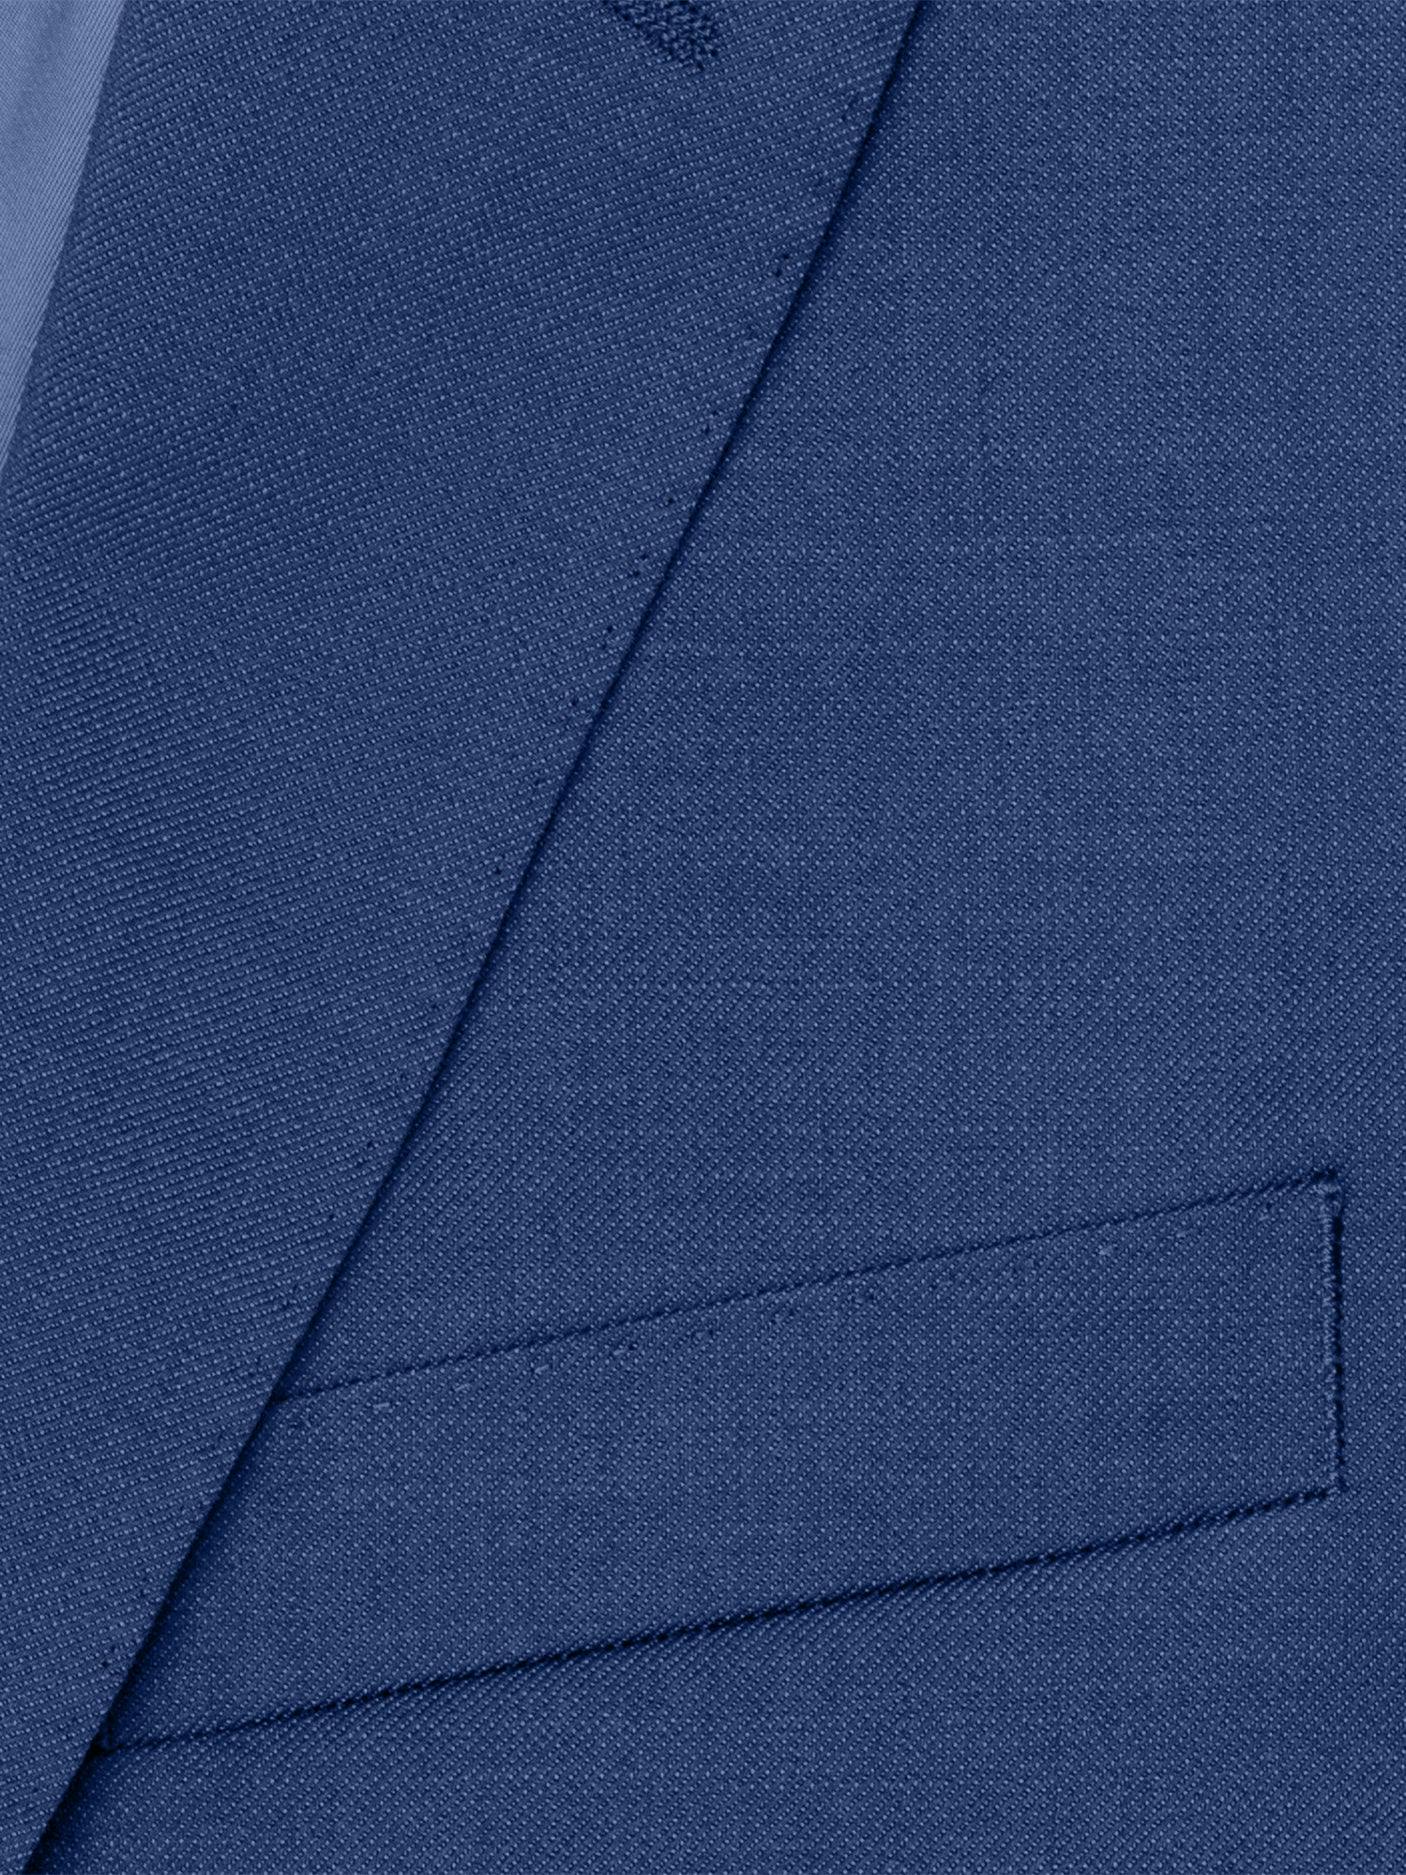 Medium Blue Suit